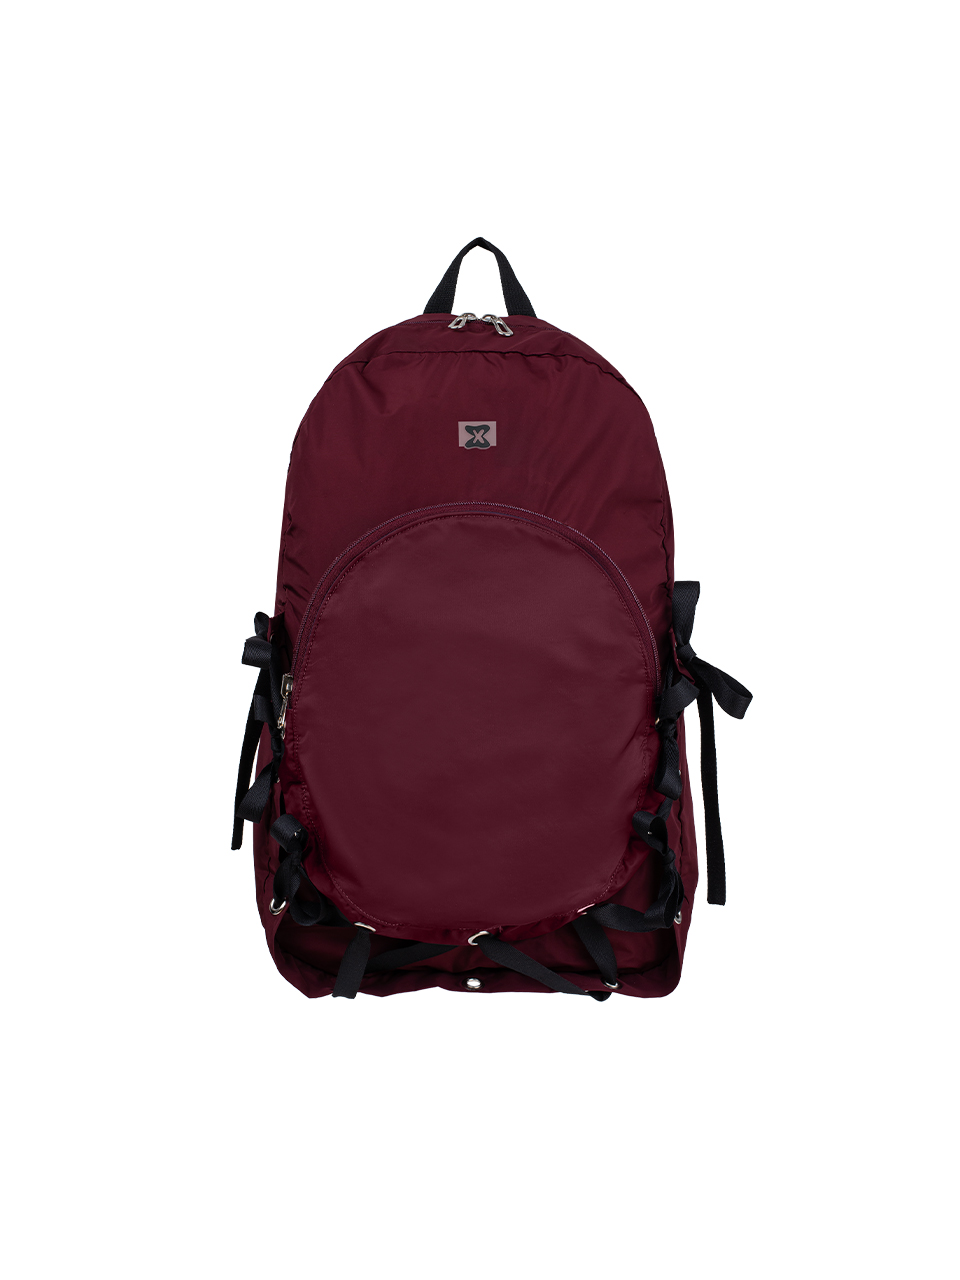 Nest Backpack (Plum Red)